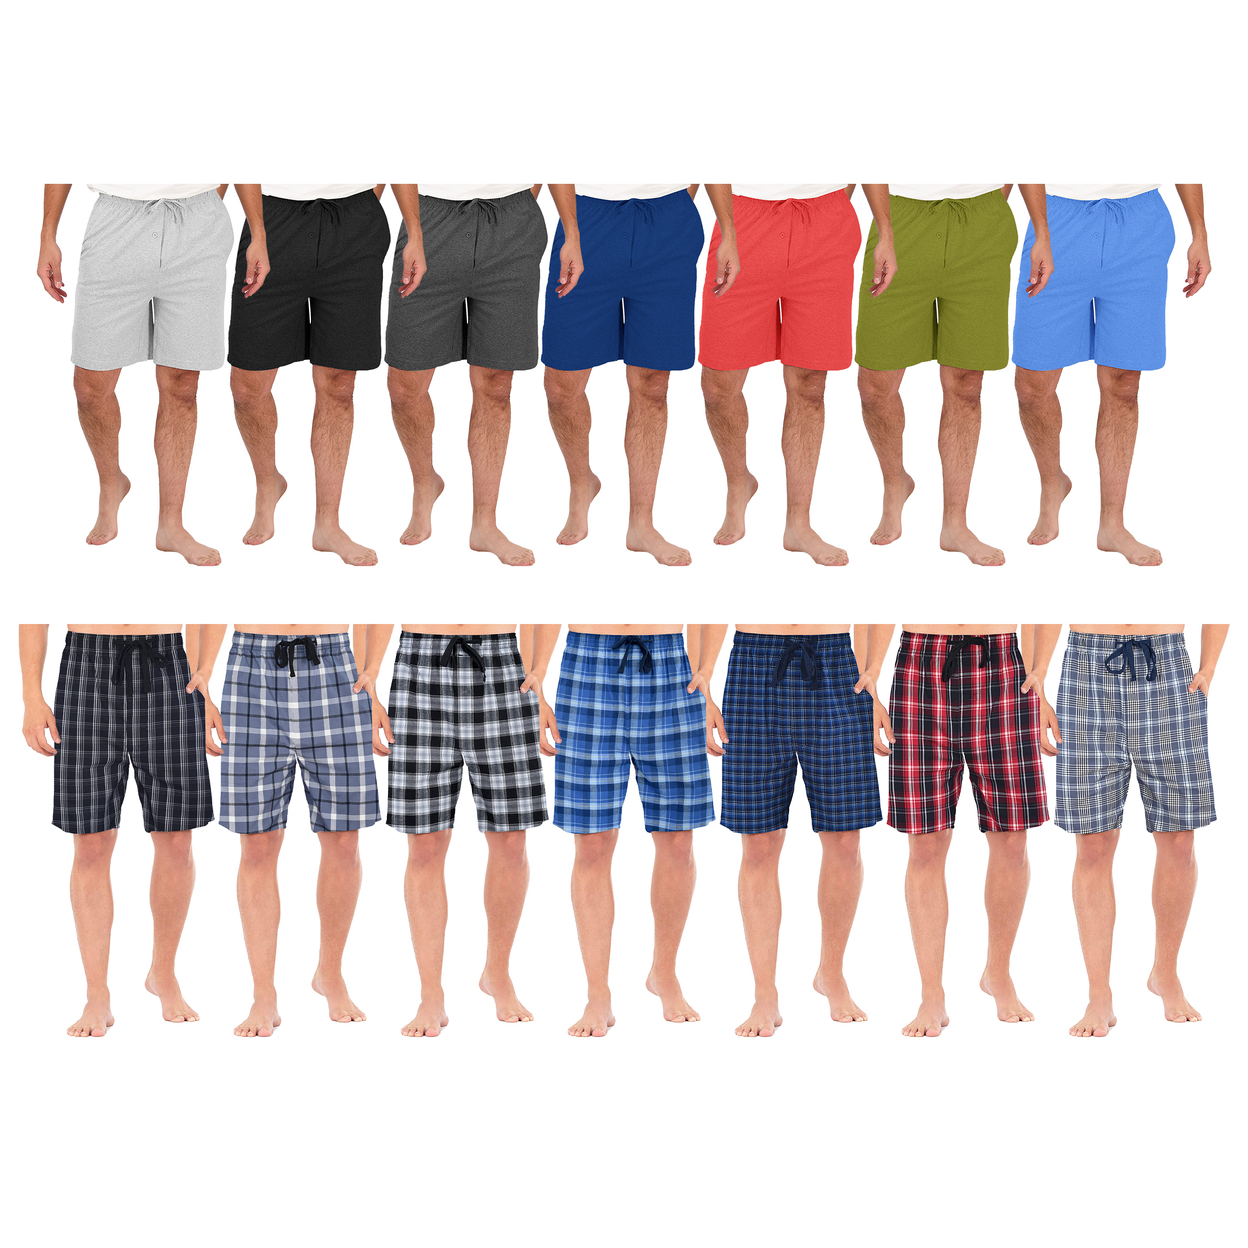 Men's Ultra-Soft Knit Lounge Pajama Sleep Shorts - Solid, Large